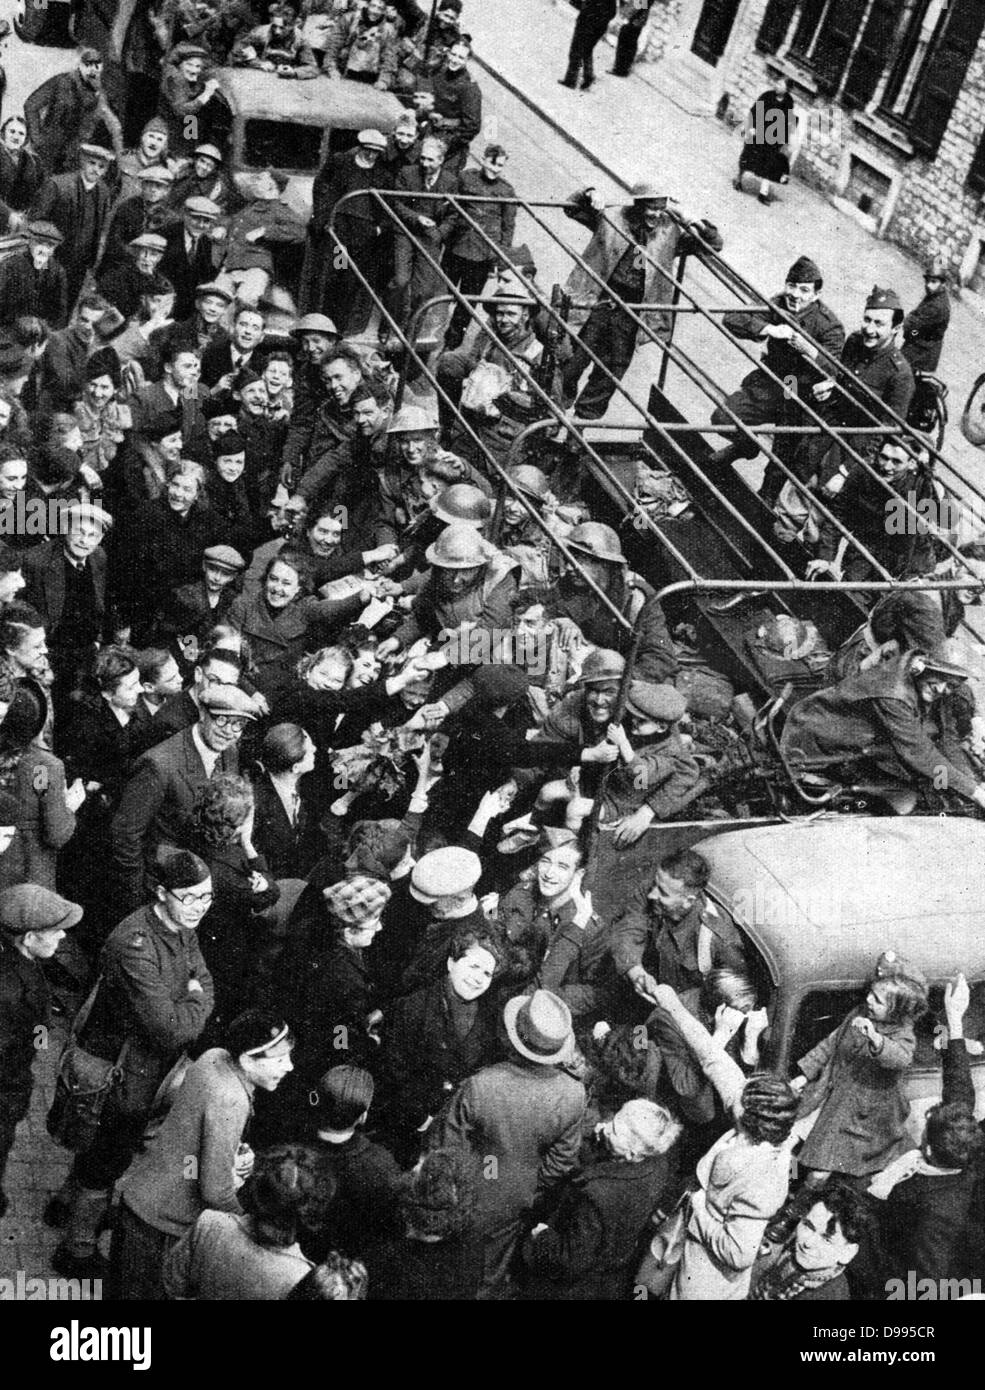 Befreiung Belgiens von der deutschen Besatzung, 1-10 September 1944: eine LKW-Ladung von britischen Soldaten durch die Jubelnden belgische Zivilisten und Soldaten begrüßt. Stockfoto